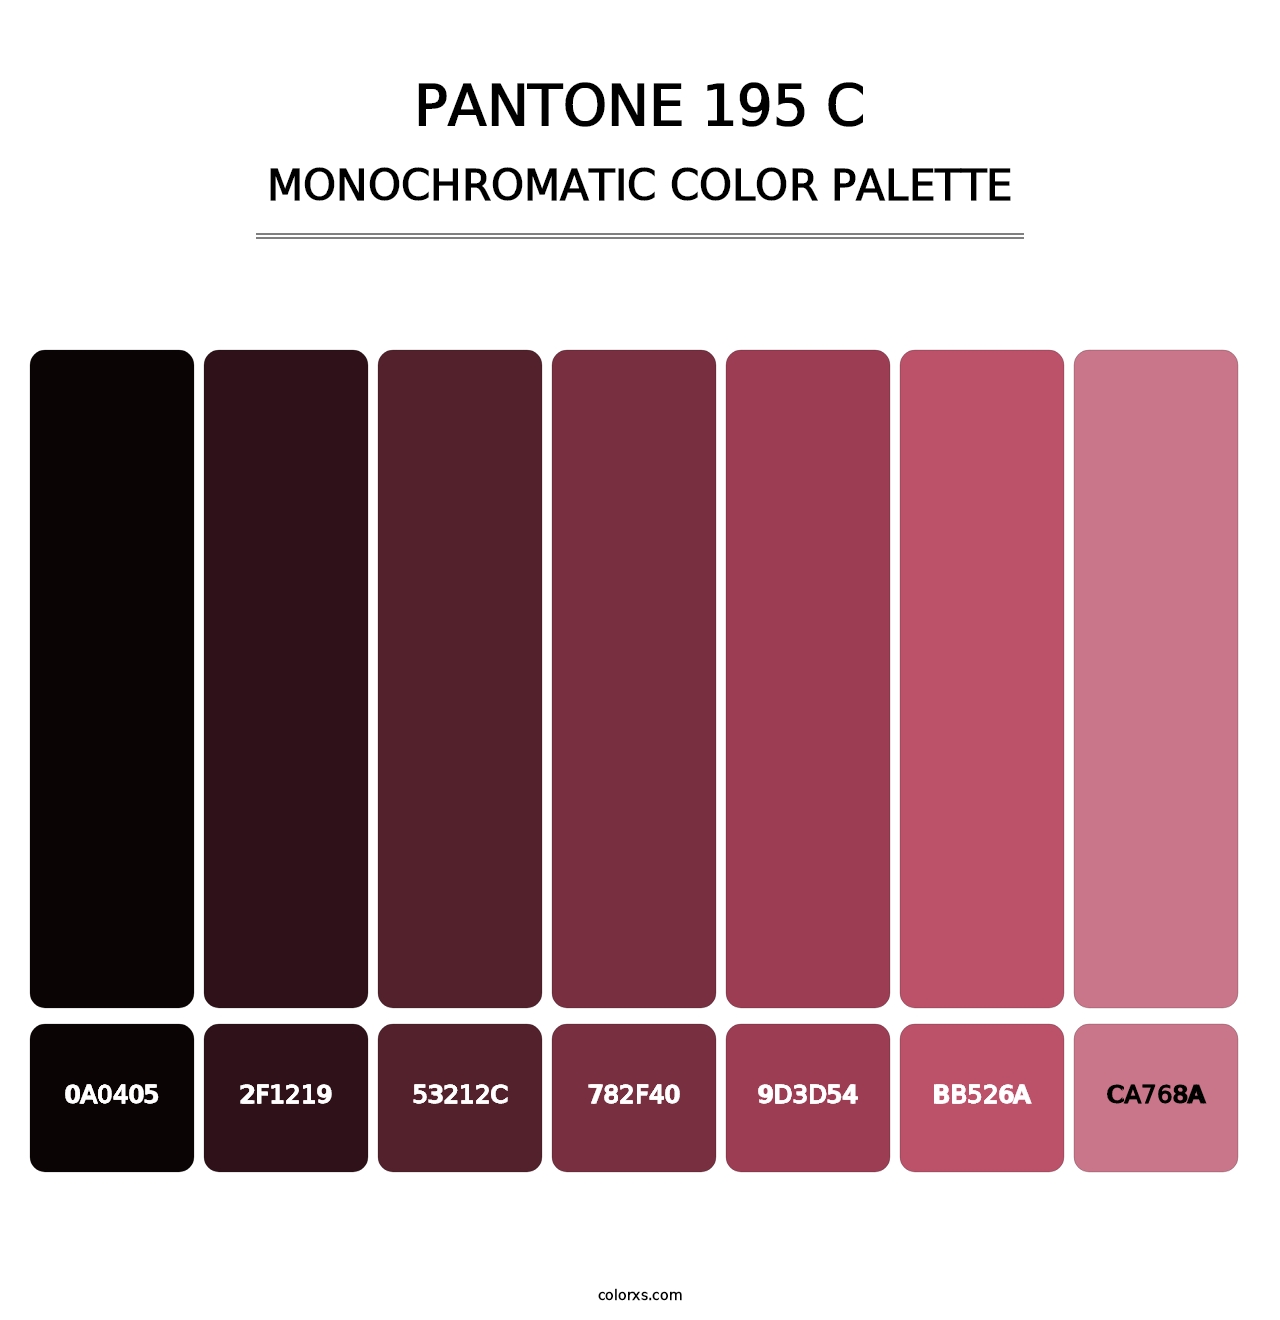 PANTONE 195 C - Monochromatic Color Palette